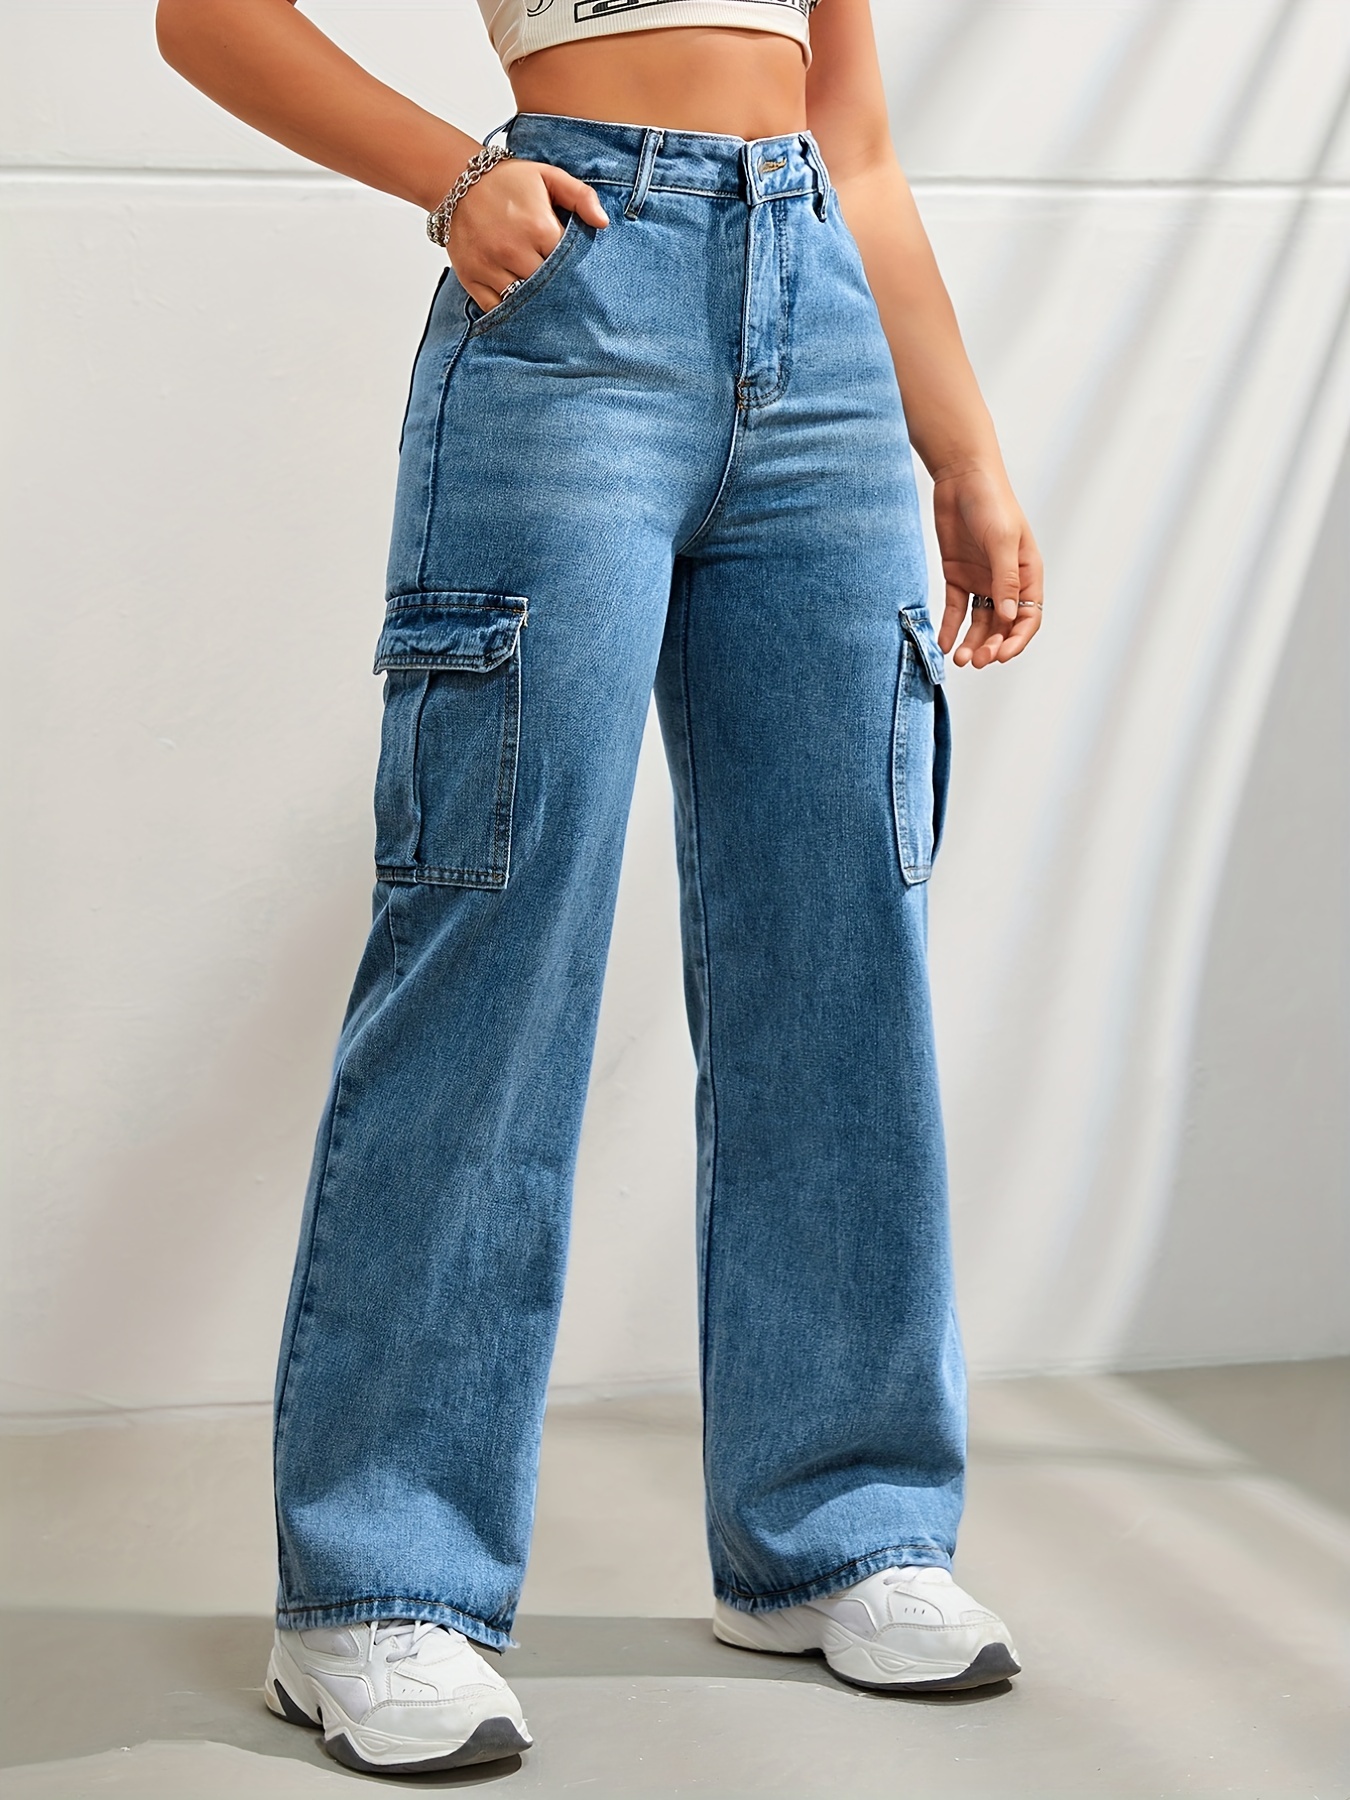 Pantalon Jean Basico Bolsillos Laterales - Tienda Exclusiva de Ropa y  Accesorios para Mujer y niños